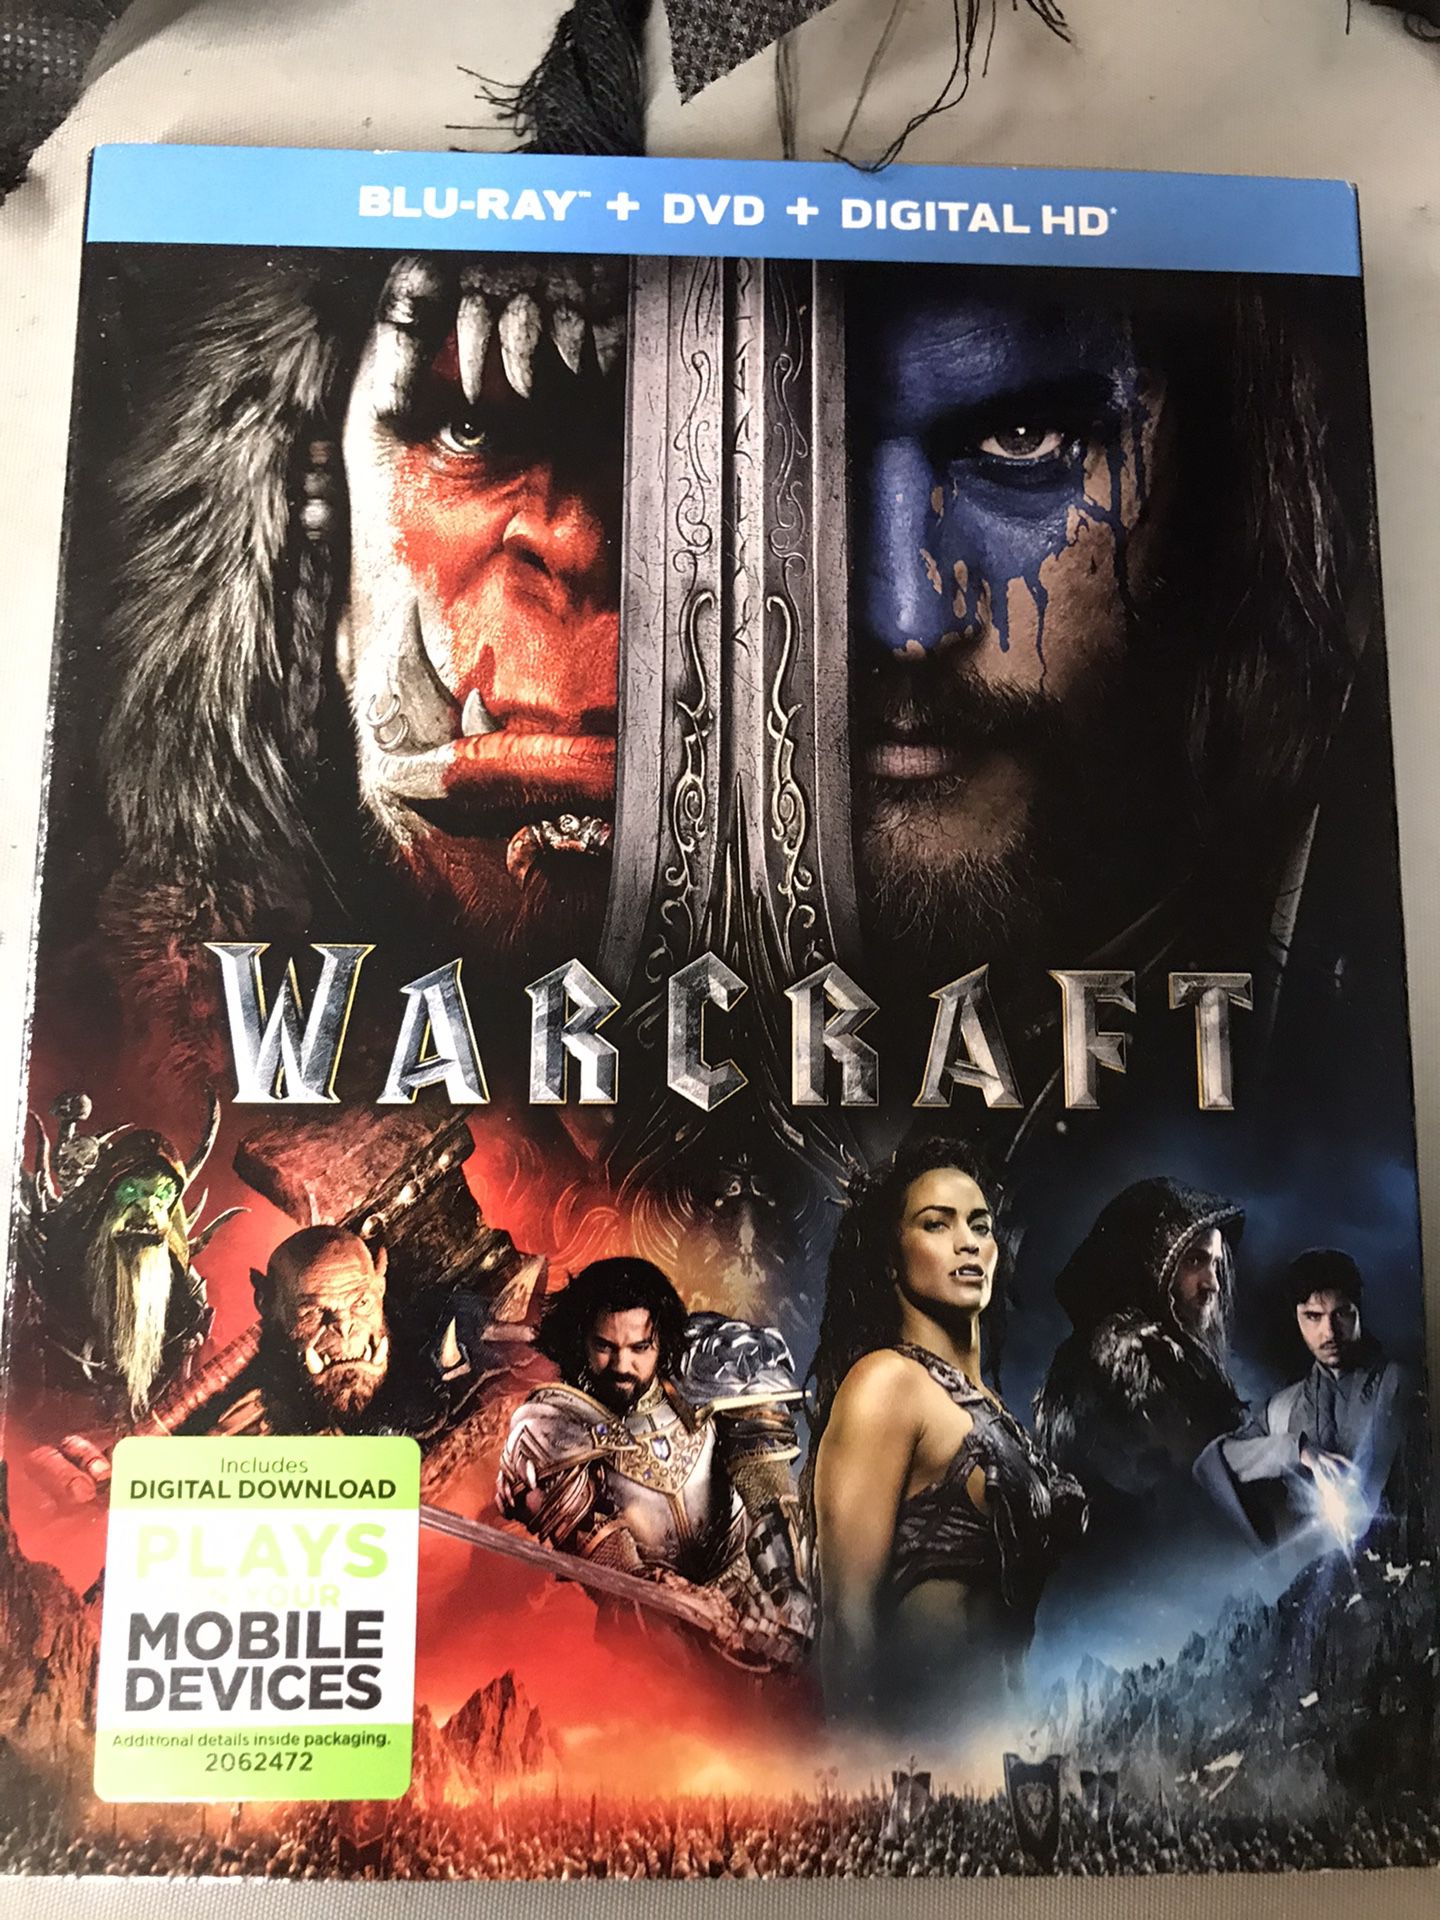 Blu-Ray /DV / Digital HD Warcraft